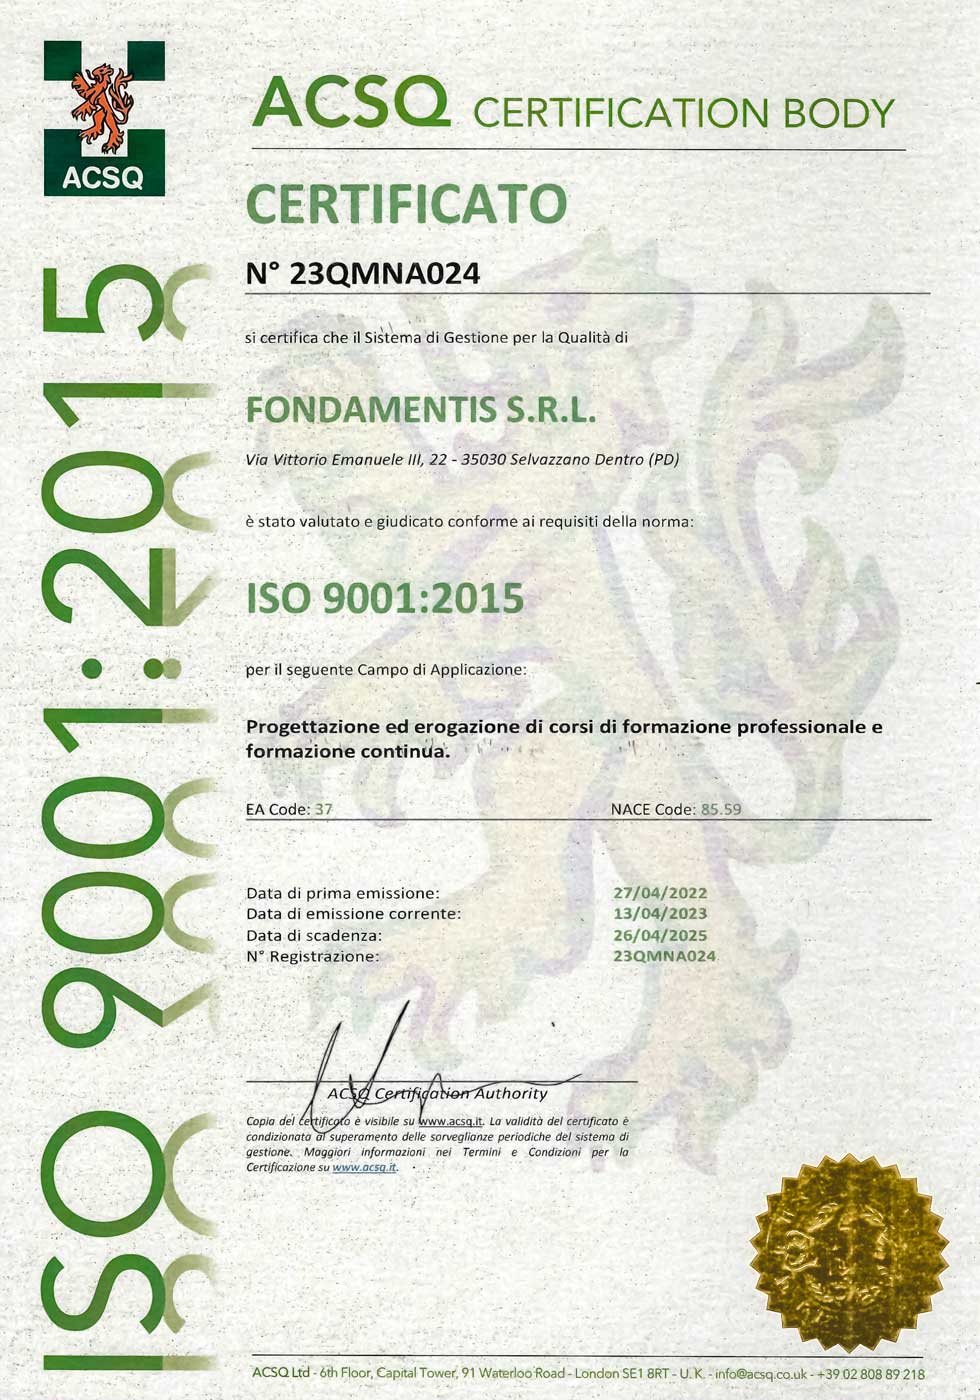 Formazione professionale certificata ISO 9001:2015 ACSQ